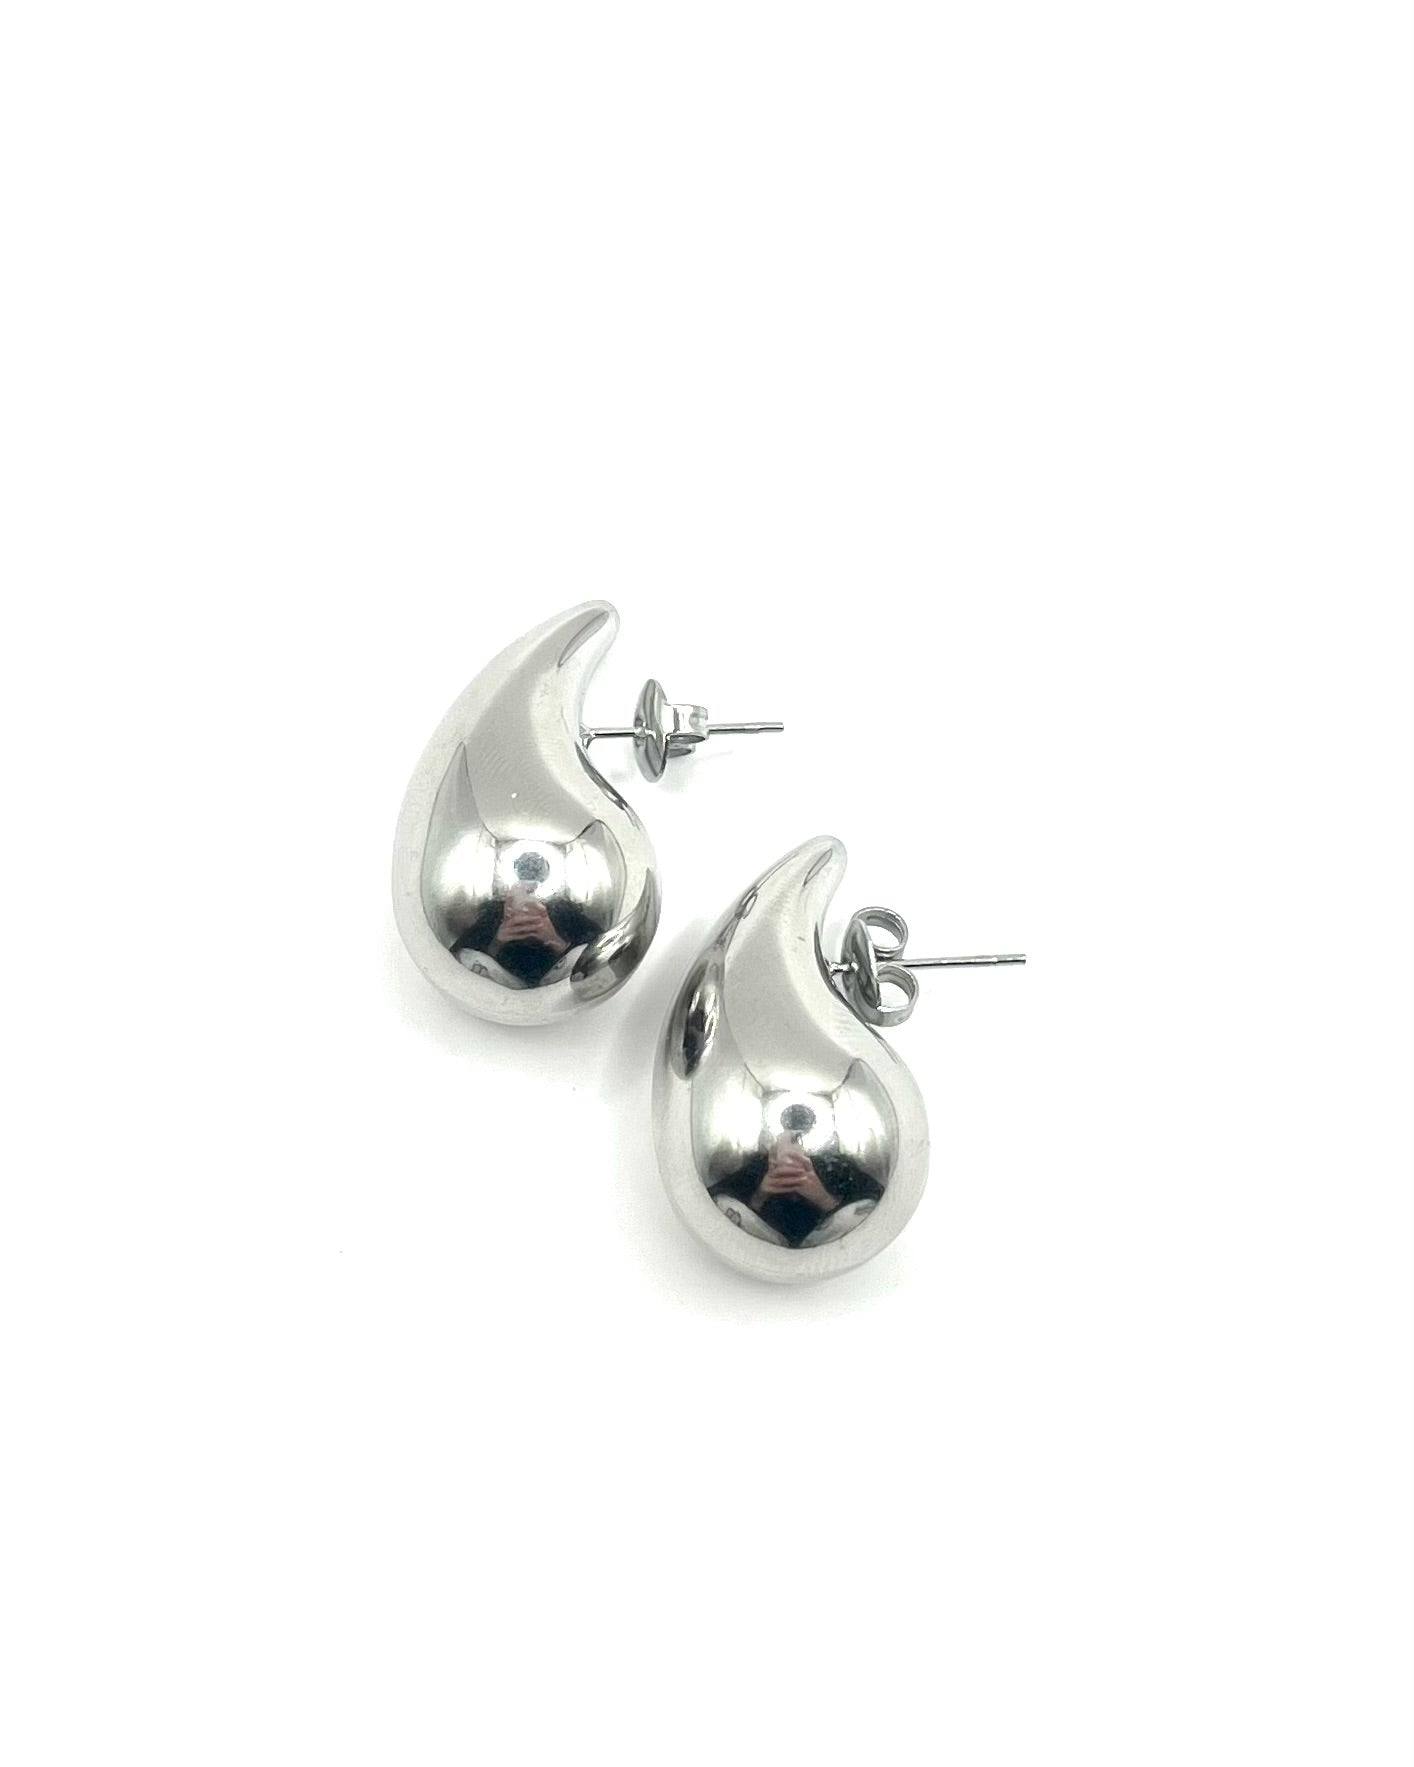 Fame earrings silver